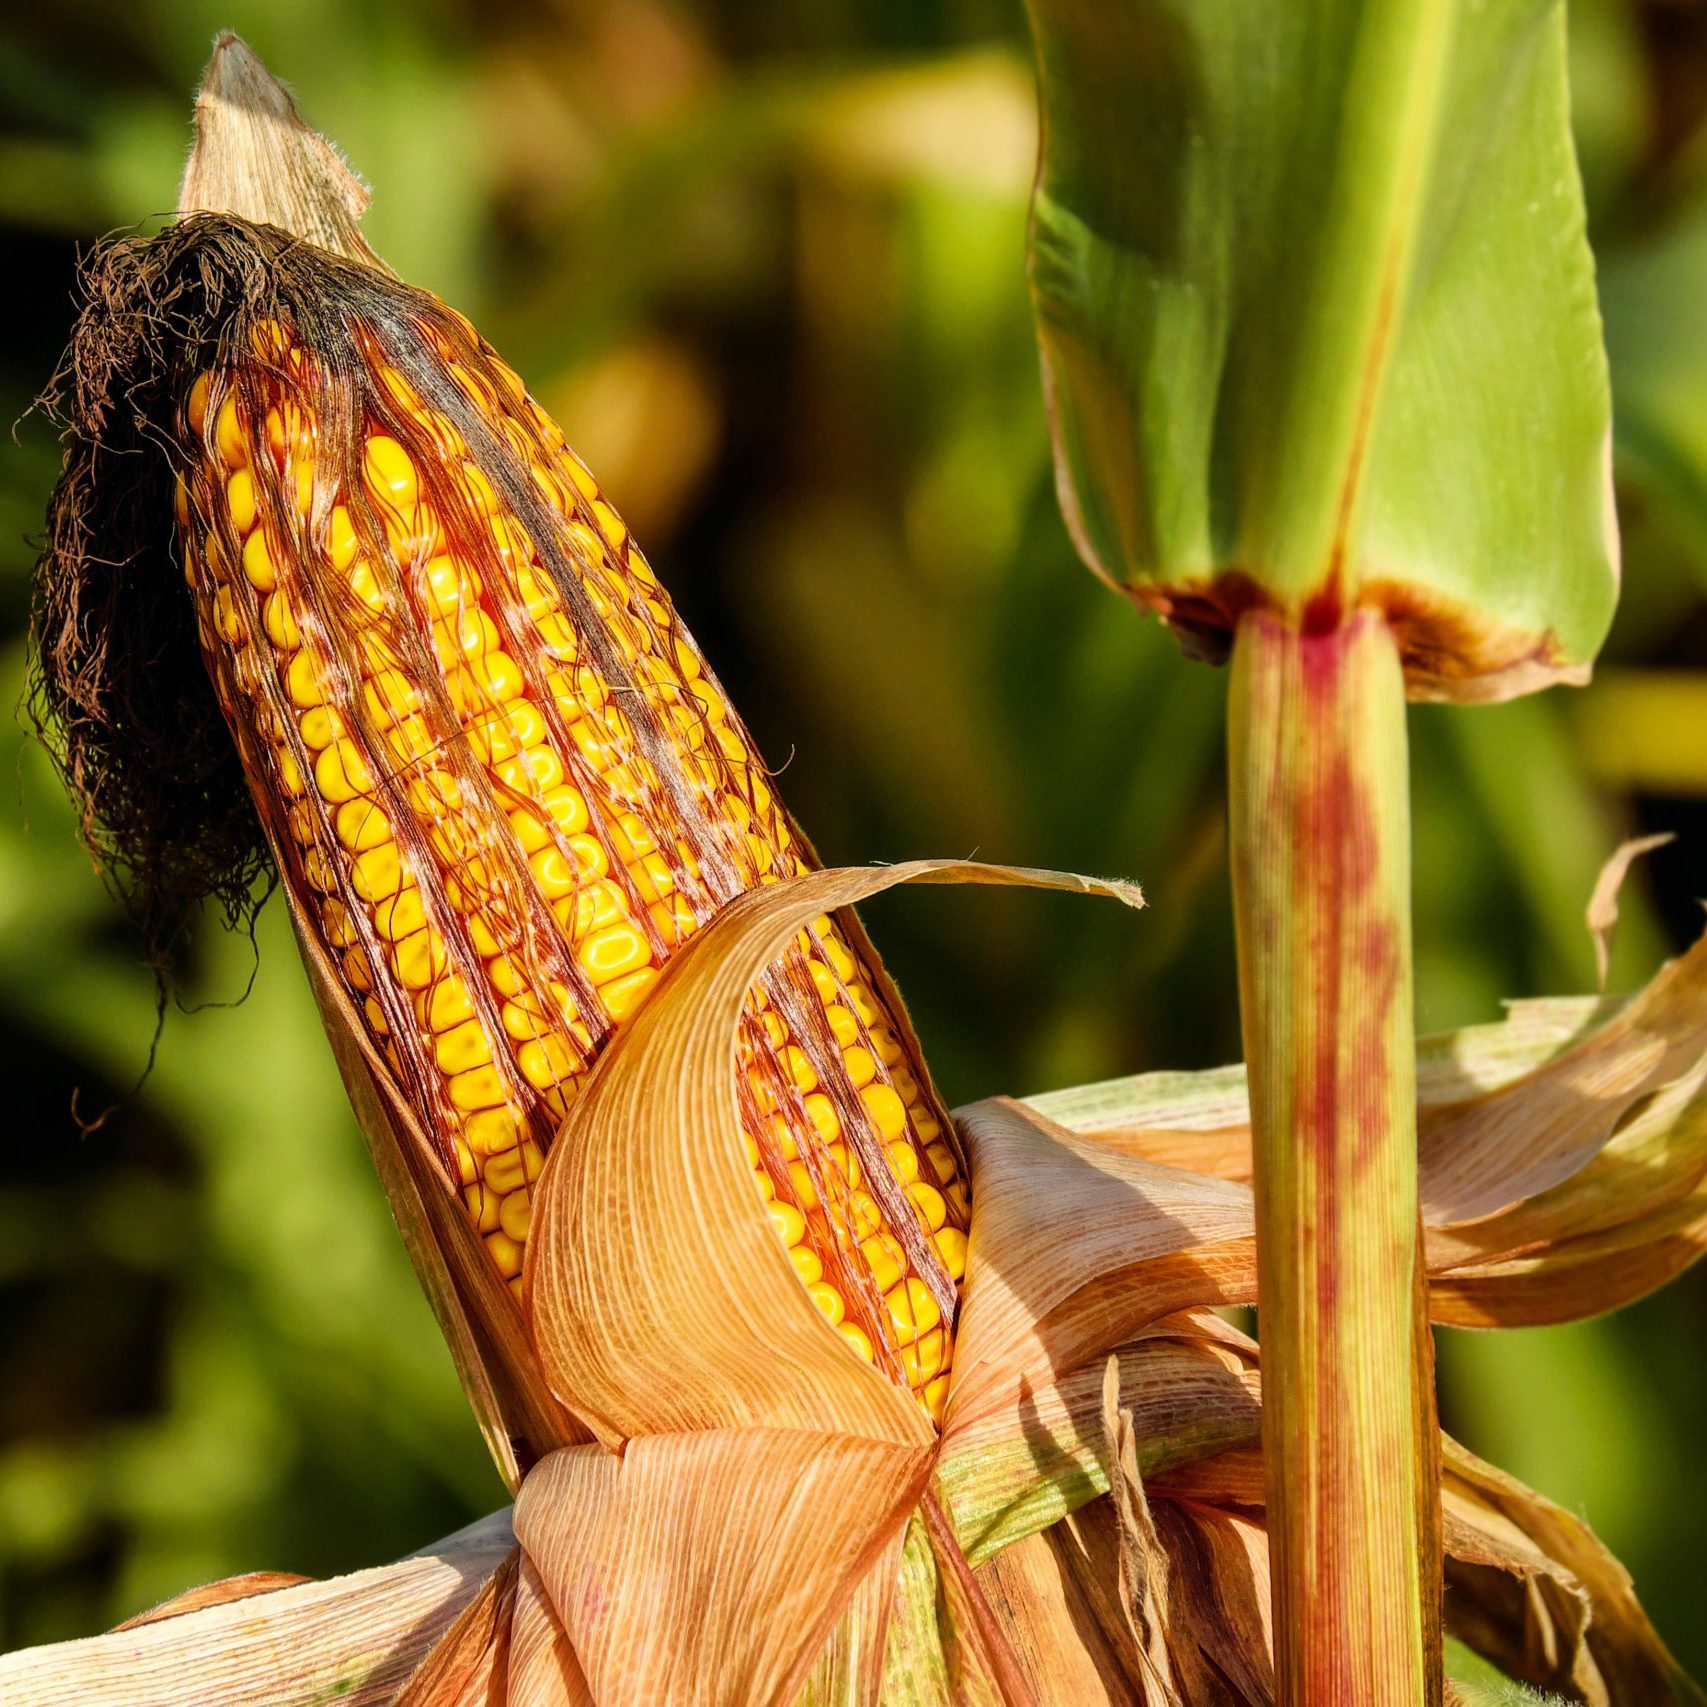 corn-on-the-cob-1690387